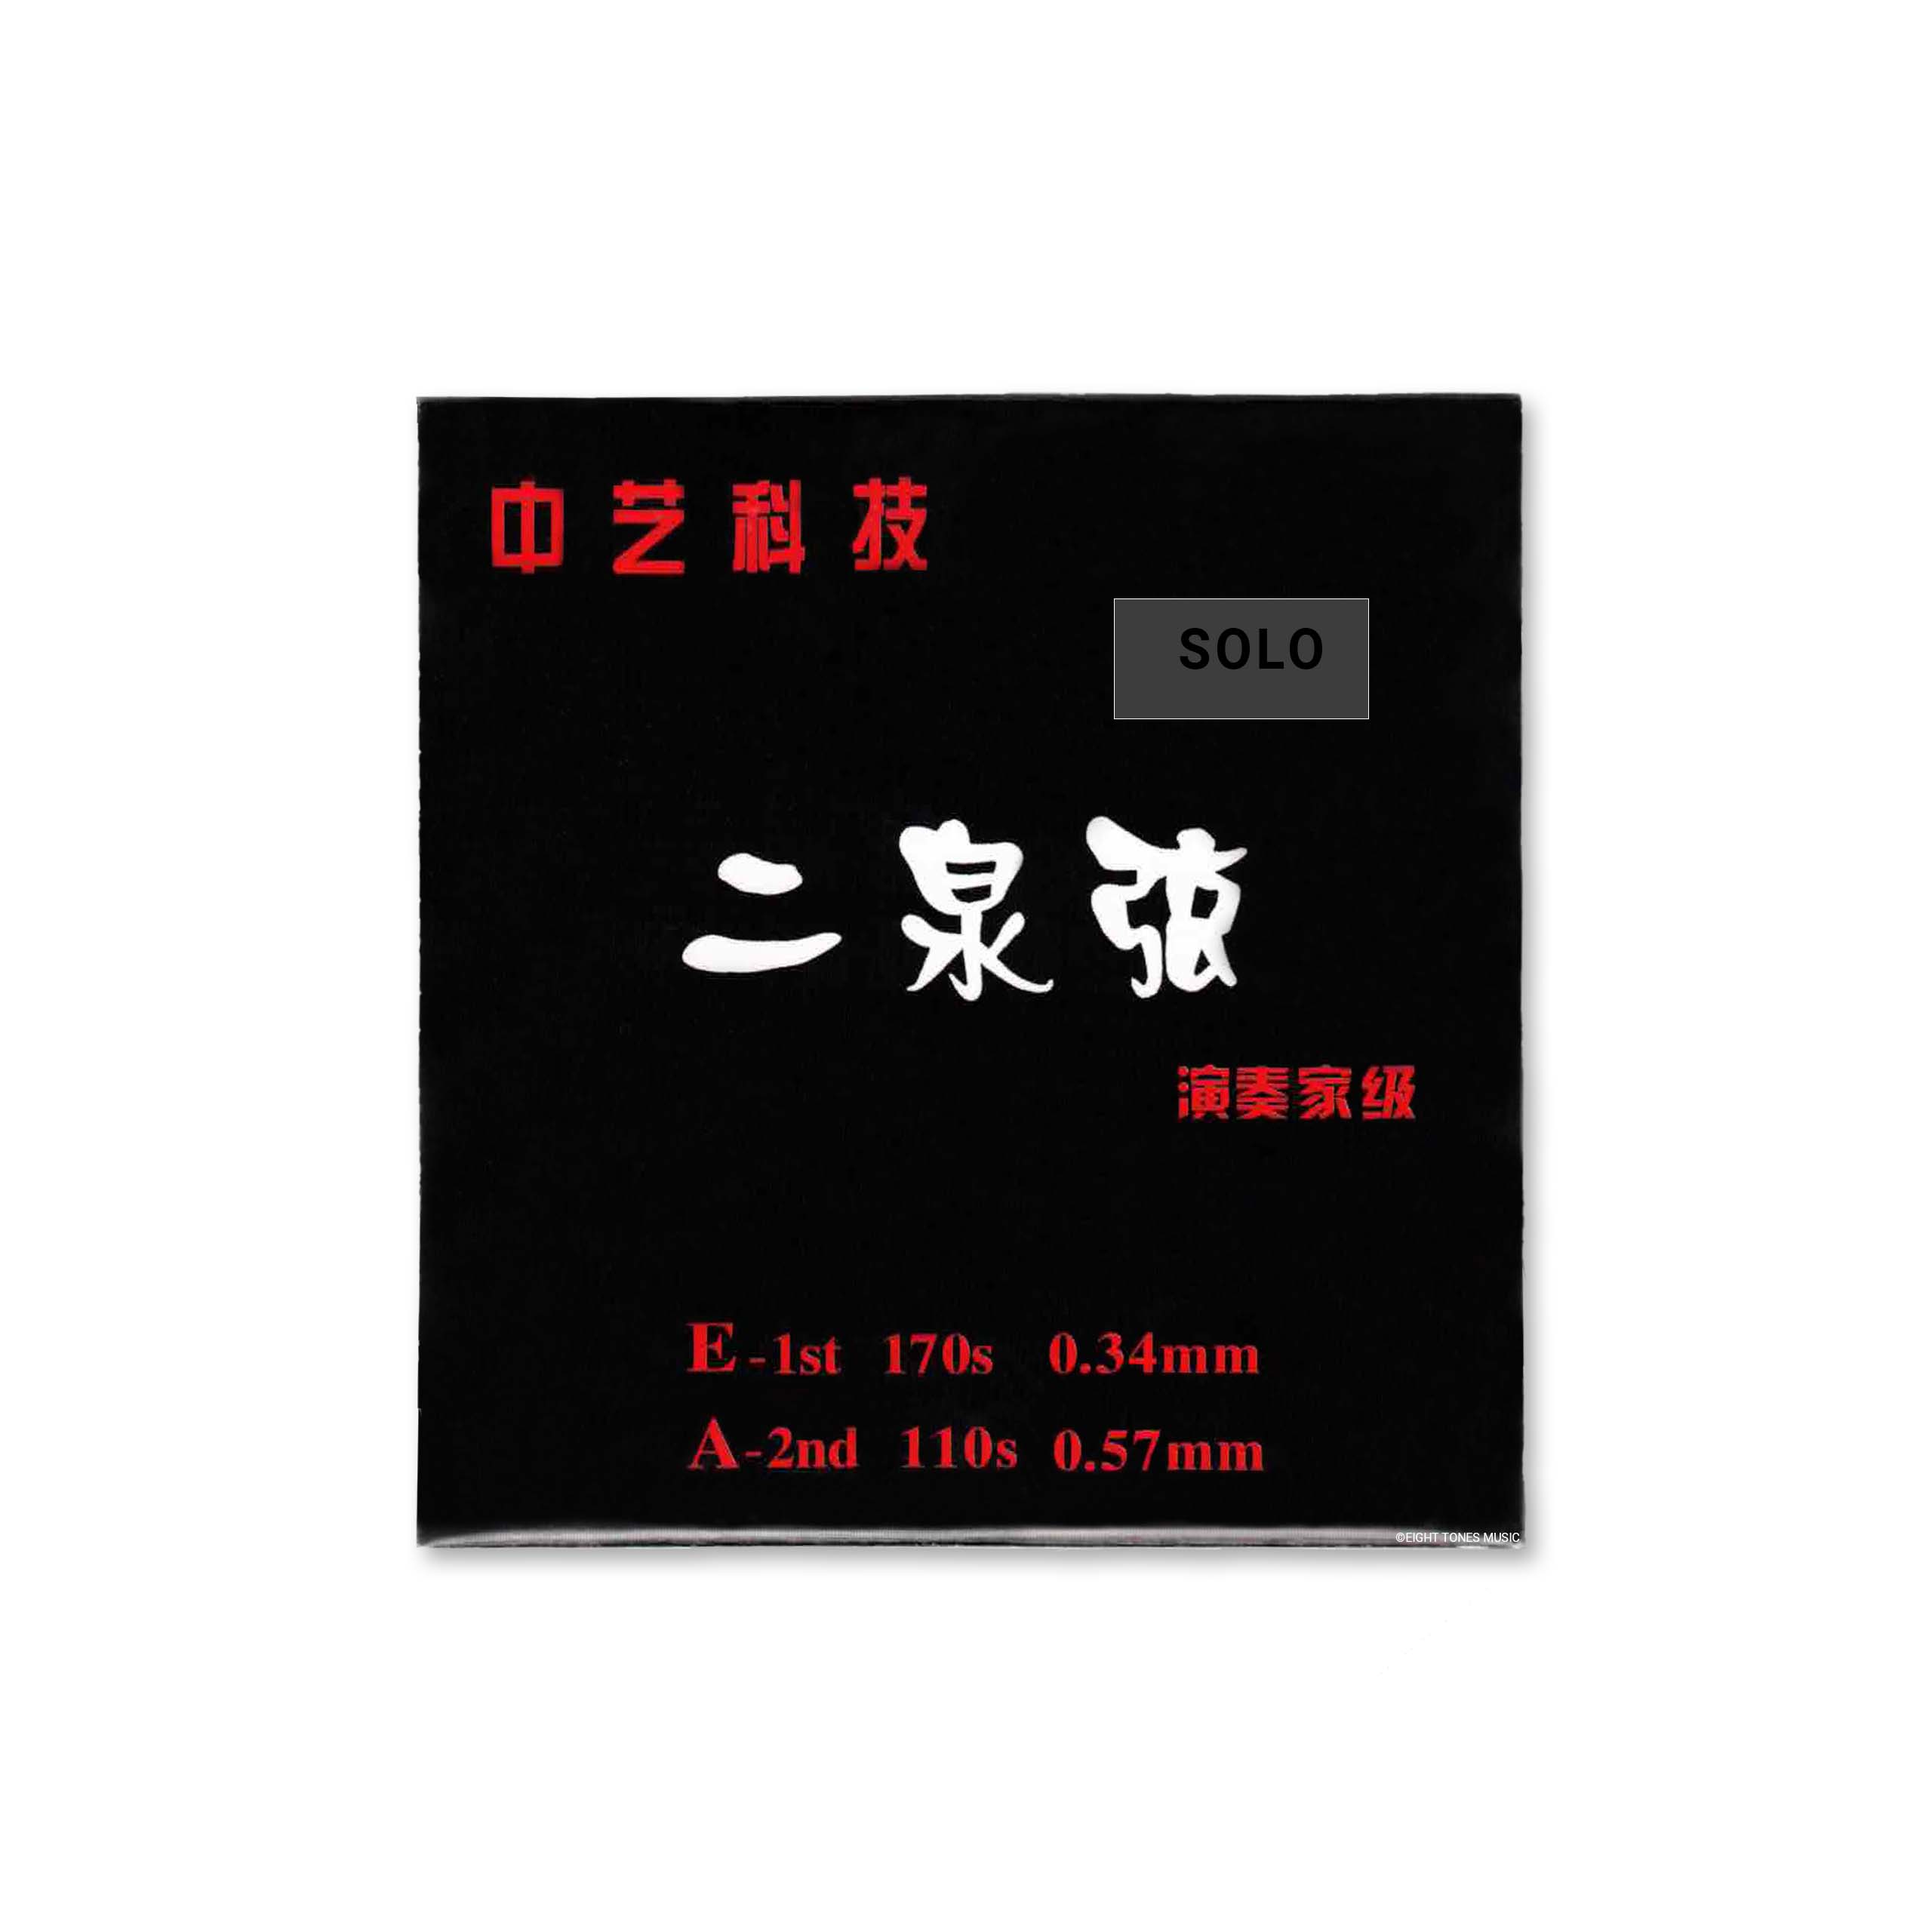 Zhongyi Keji Black Solo Erquan Erhu Strings (Set) front